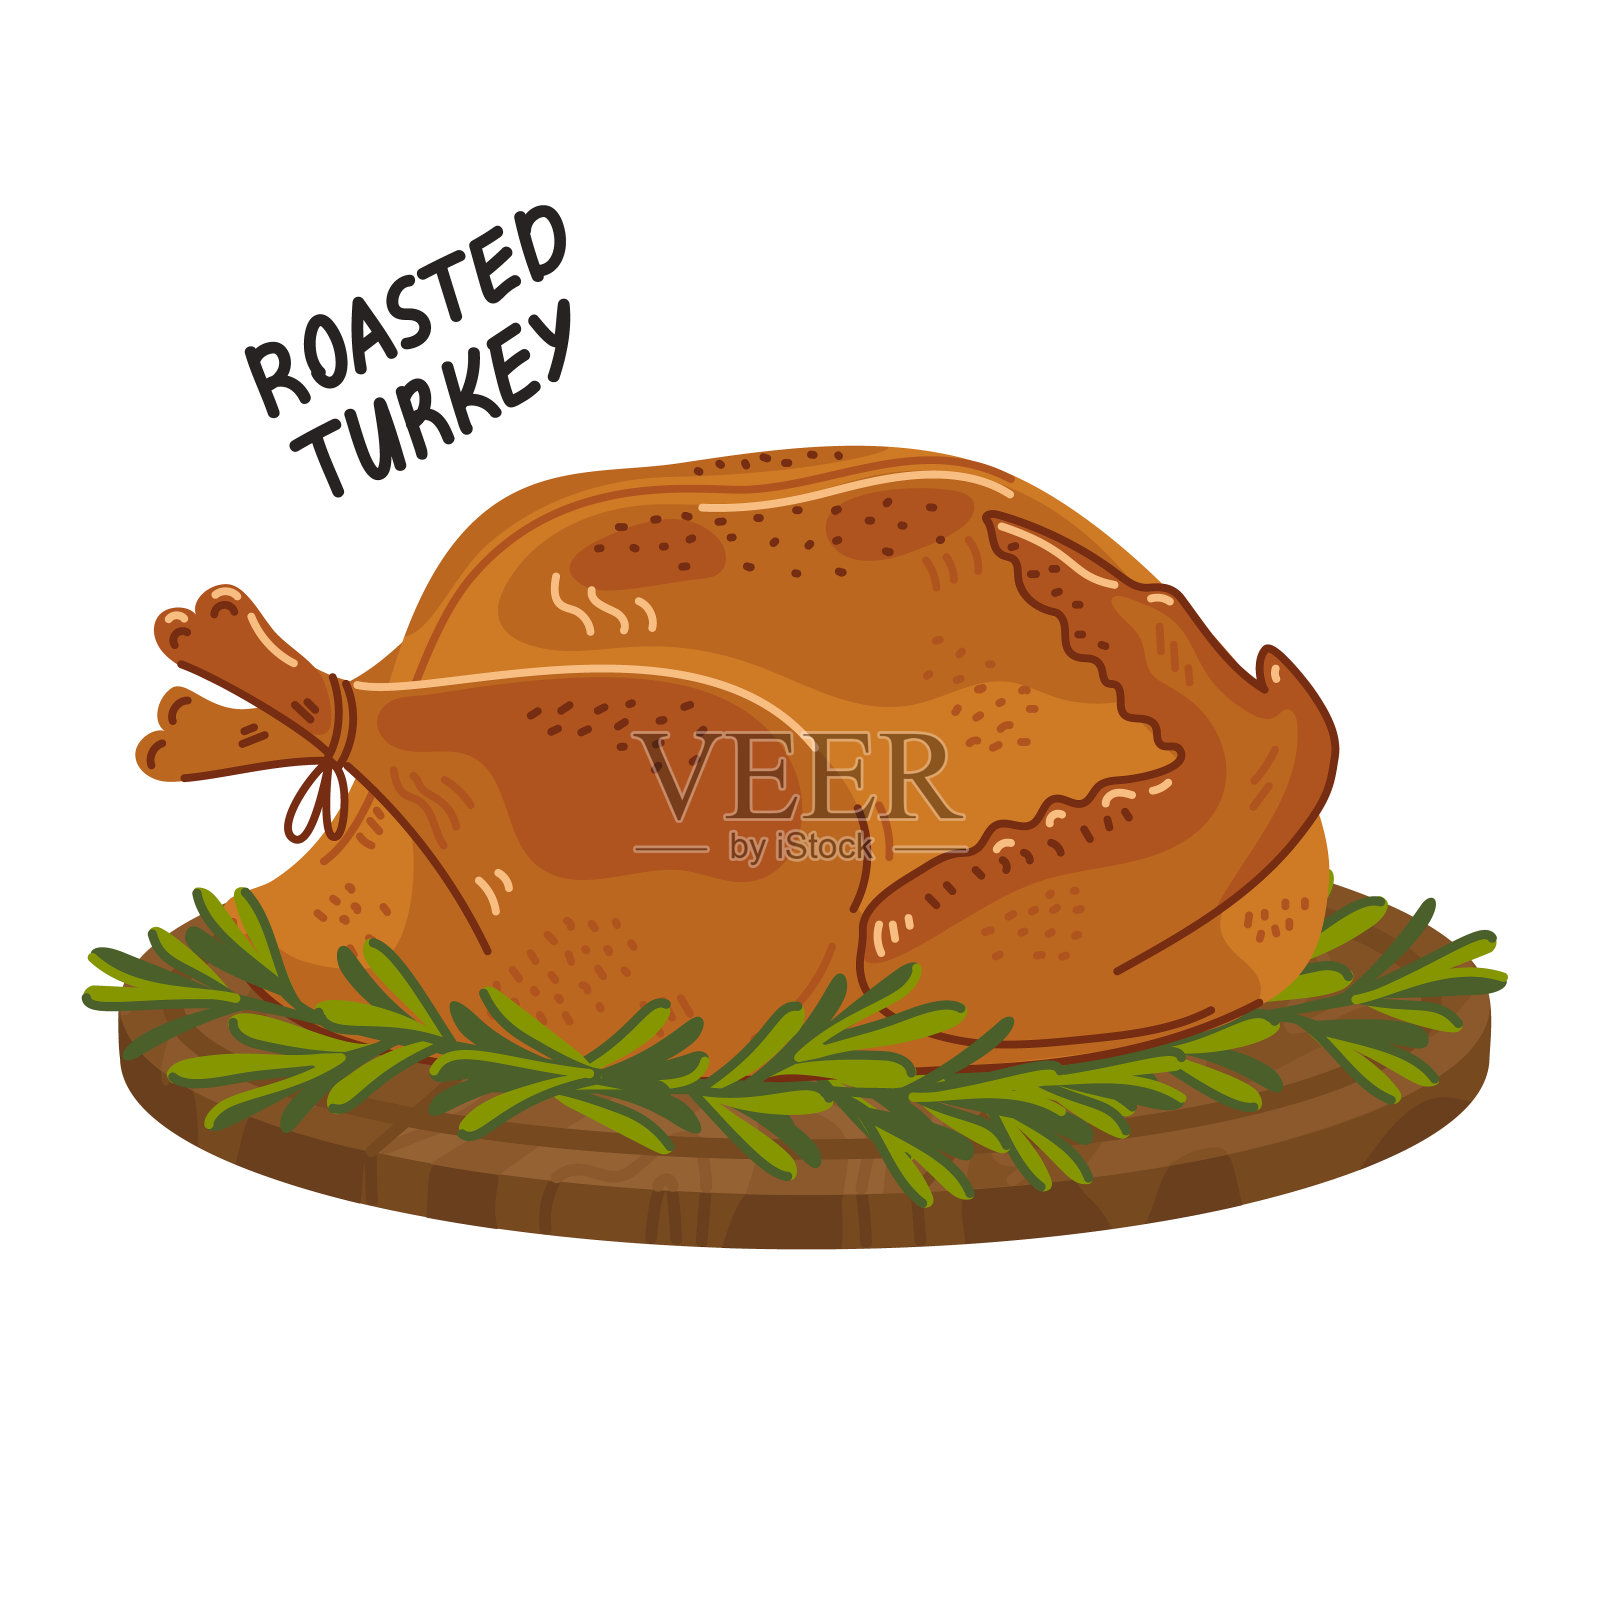 土耳其烤。把整只节日火鸡放在圆形的木板上烹饪。简单的平面风格矢量插图上的白色背景设计元素图片